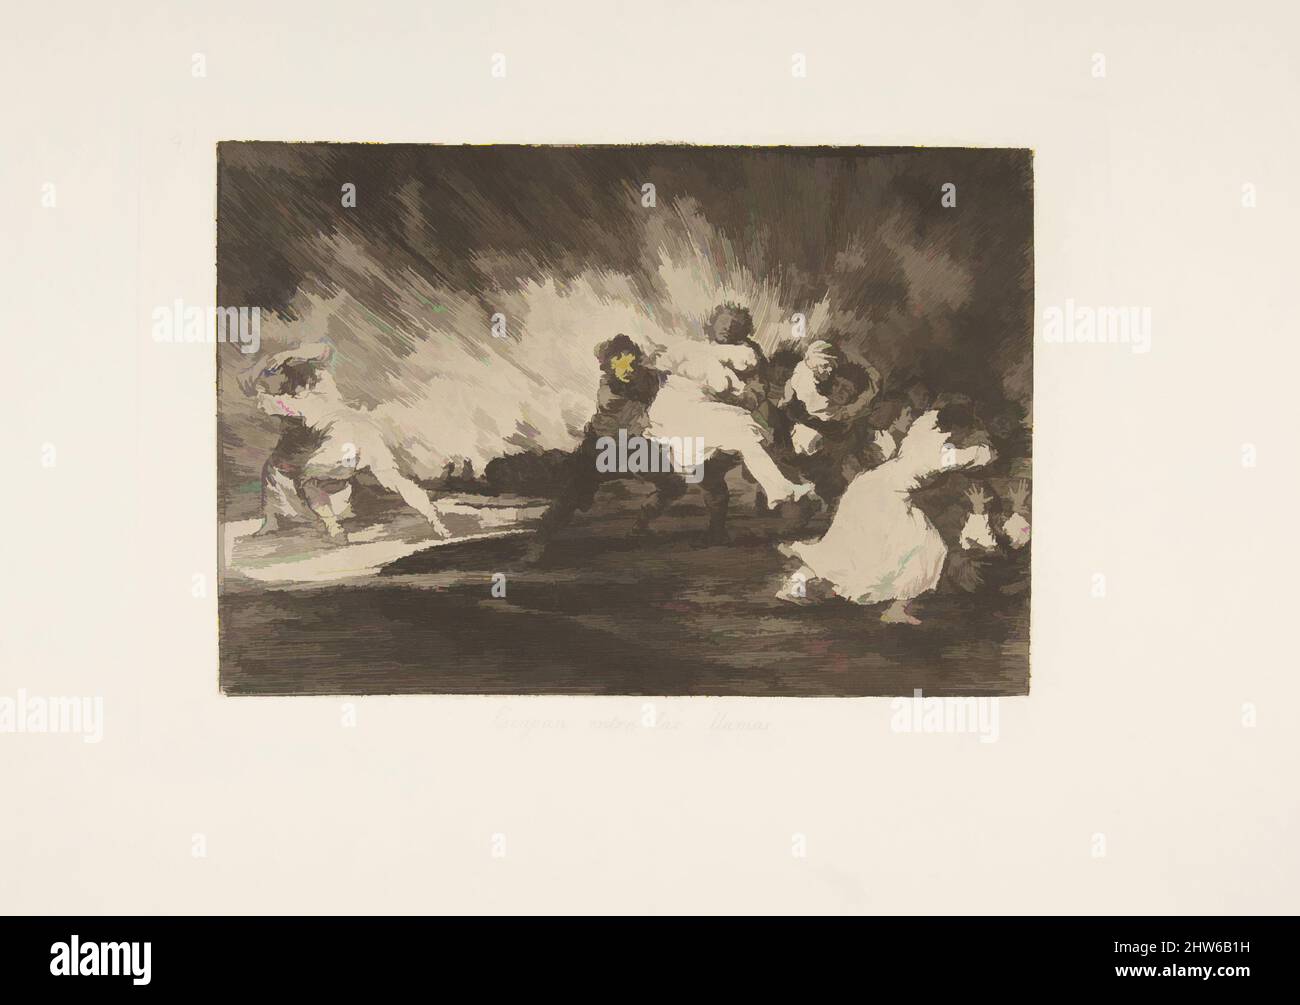 Art inspiré par la planche 41 de 'les désastres de la guerre' (Los Desastres de la Guerra): 'Ils s'échappent par les flammes' (Escapan entre las lamas), 1810 (publié en 1863), Etching et burin, plaque: 6 1/4 × 9 3/16 in. (15,9 × 23,4 cm), Prints, Goya (Francisco de Goya y Lucientes) (espagnol, oeuvres classiques modernisées par Artotop avec une touche de modernité. Formes, couleur et valeur, impact visuel accrocheur sur l'art émotions par la liberté d'œuvres d'art d'une manière contemporaine. Un message intemporel qui cherche une nouvelle direction créative. Artistes qui se tournent vers le support numérique et créent le NFT Artotop Banque D'Images